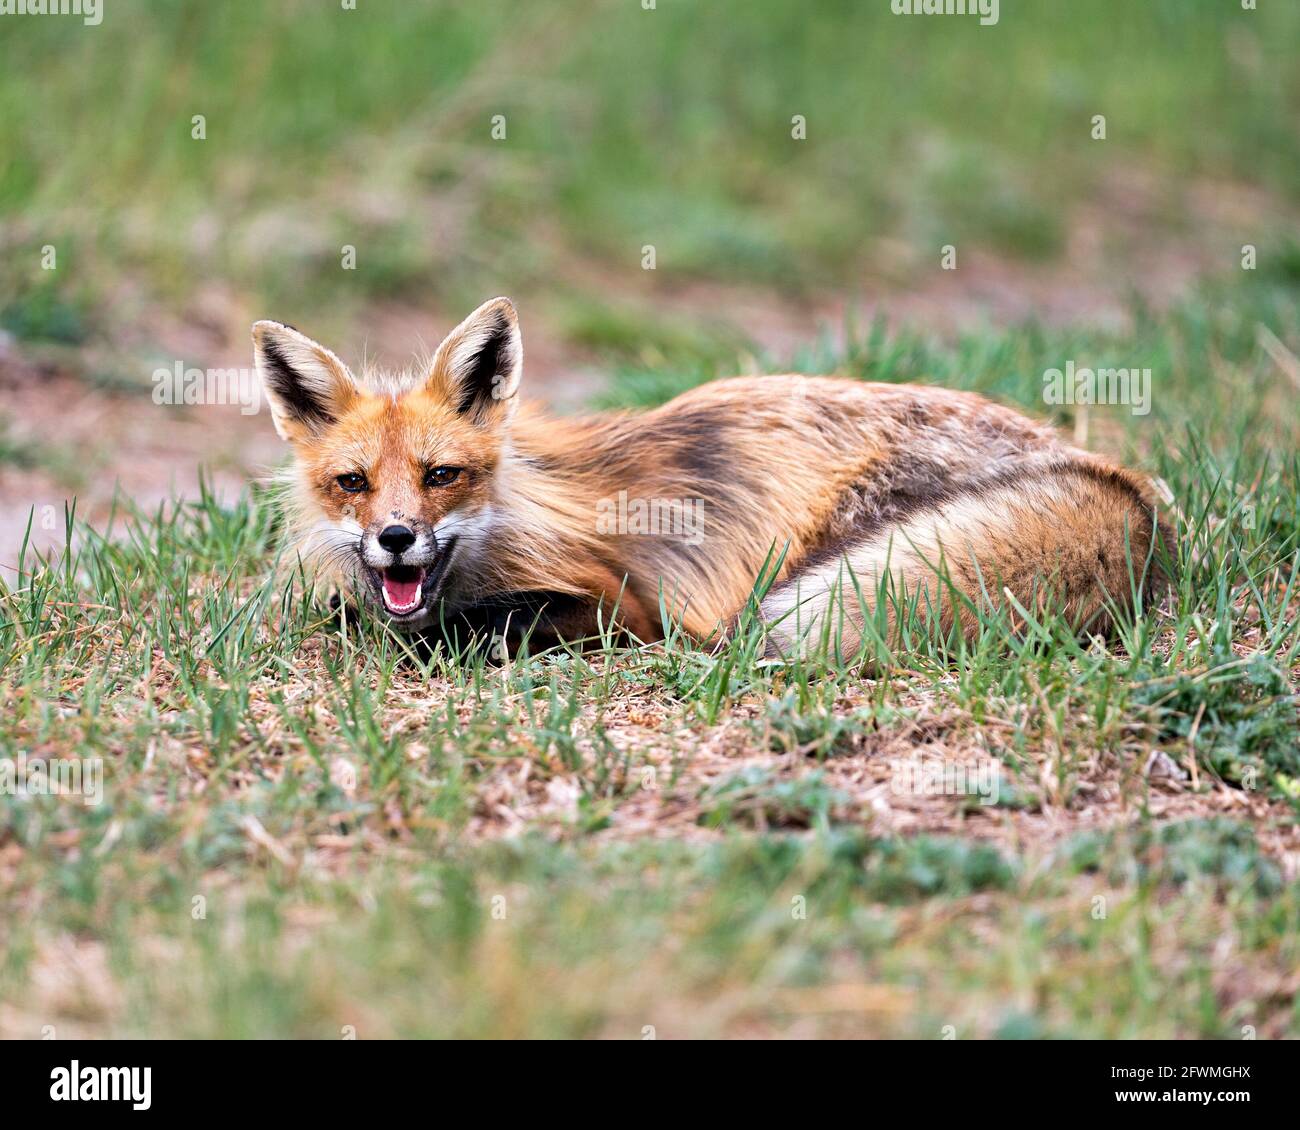 Vista del profilo di Red Fox in primo piano adagiata sul fogliame con una bocca aperta nel suo ambiente e habitat. Immagine. Verticale. Immagine FOX. Foto Stock